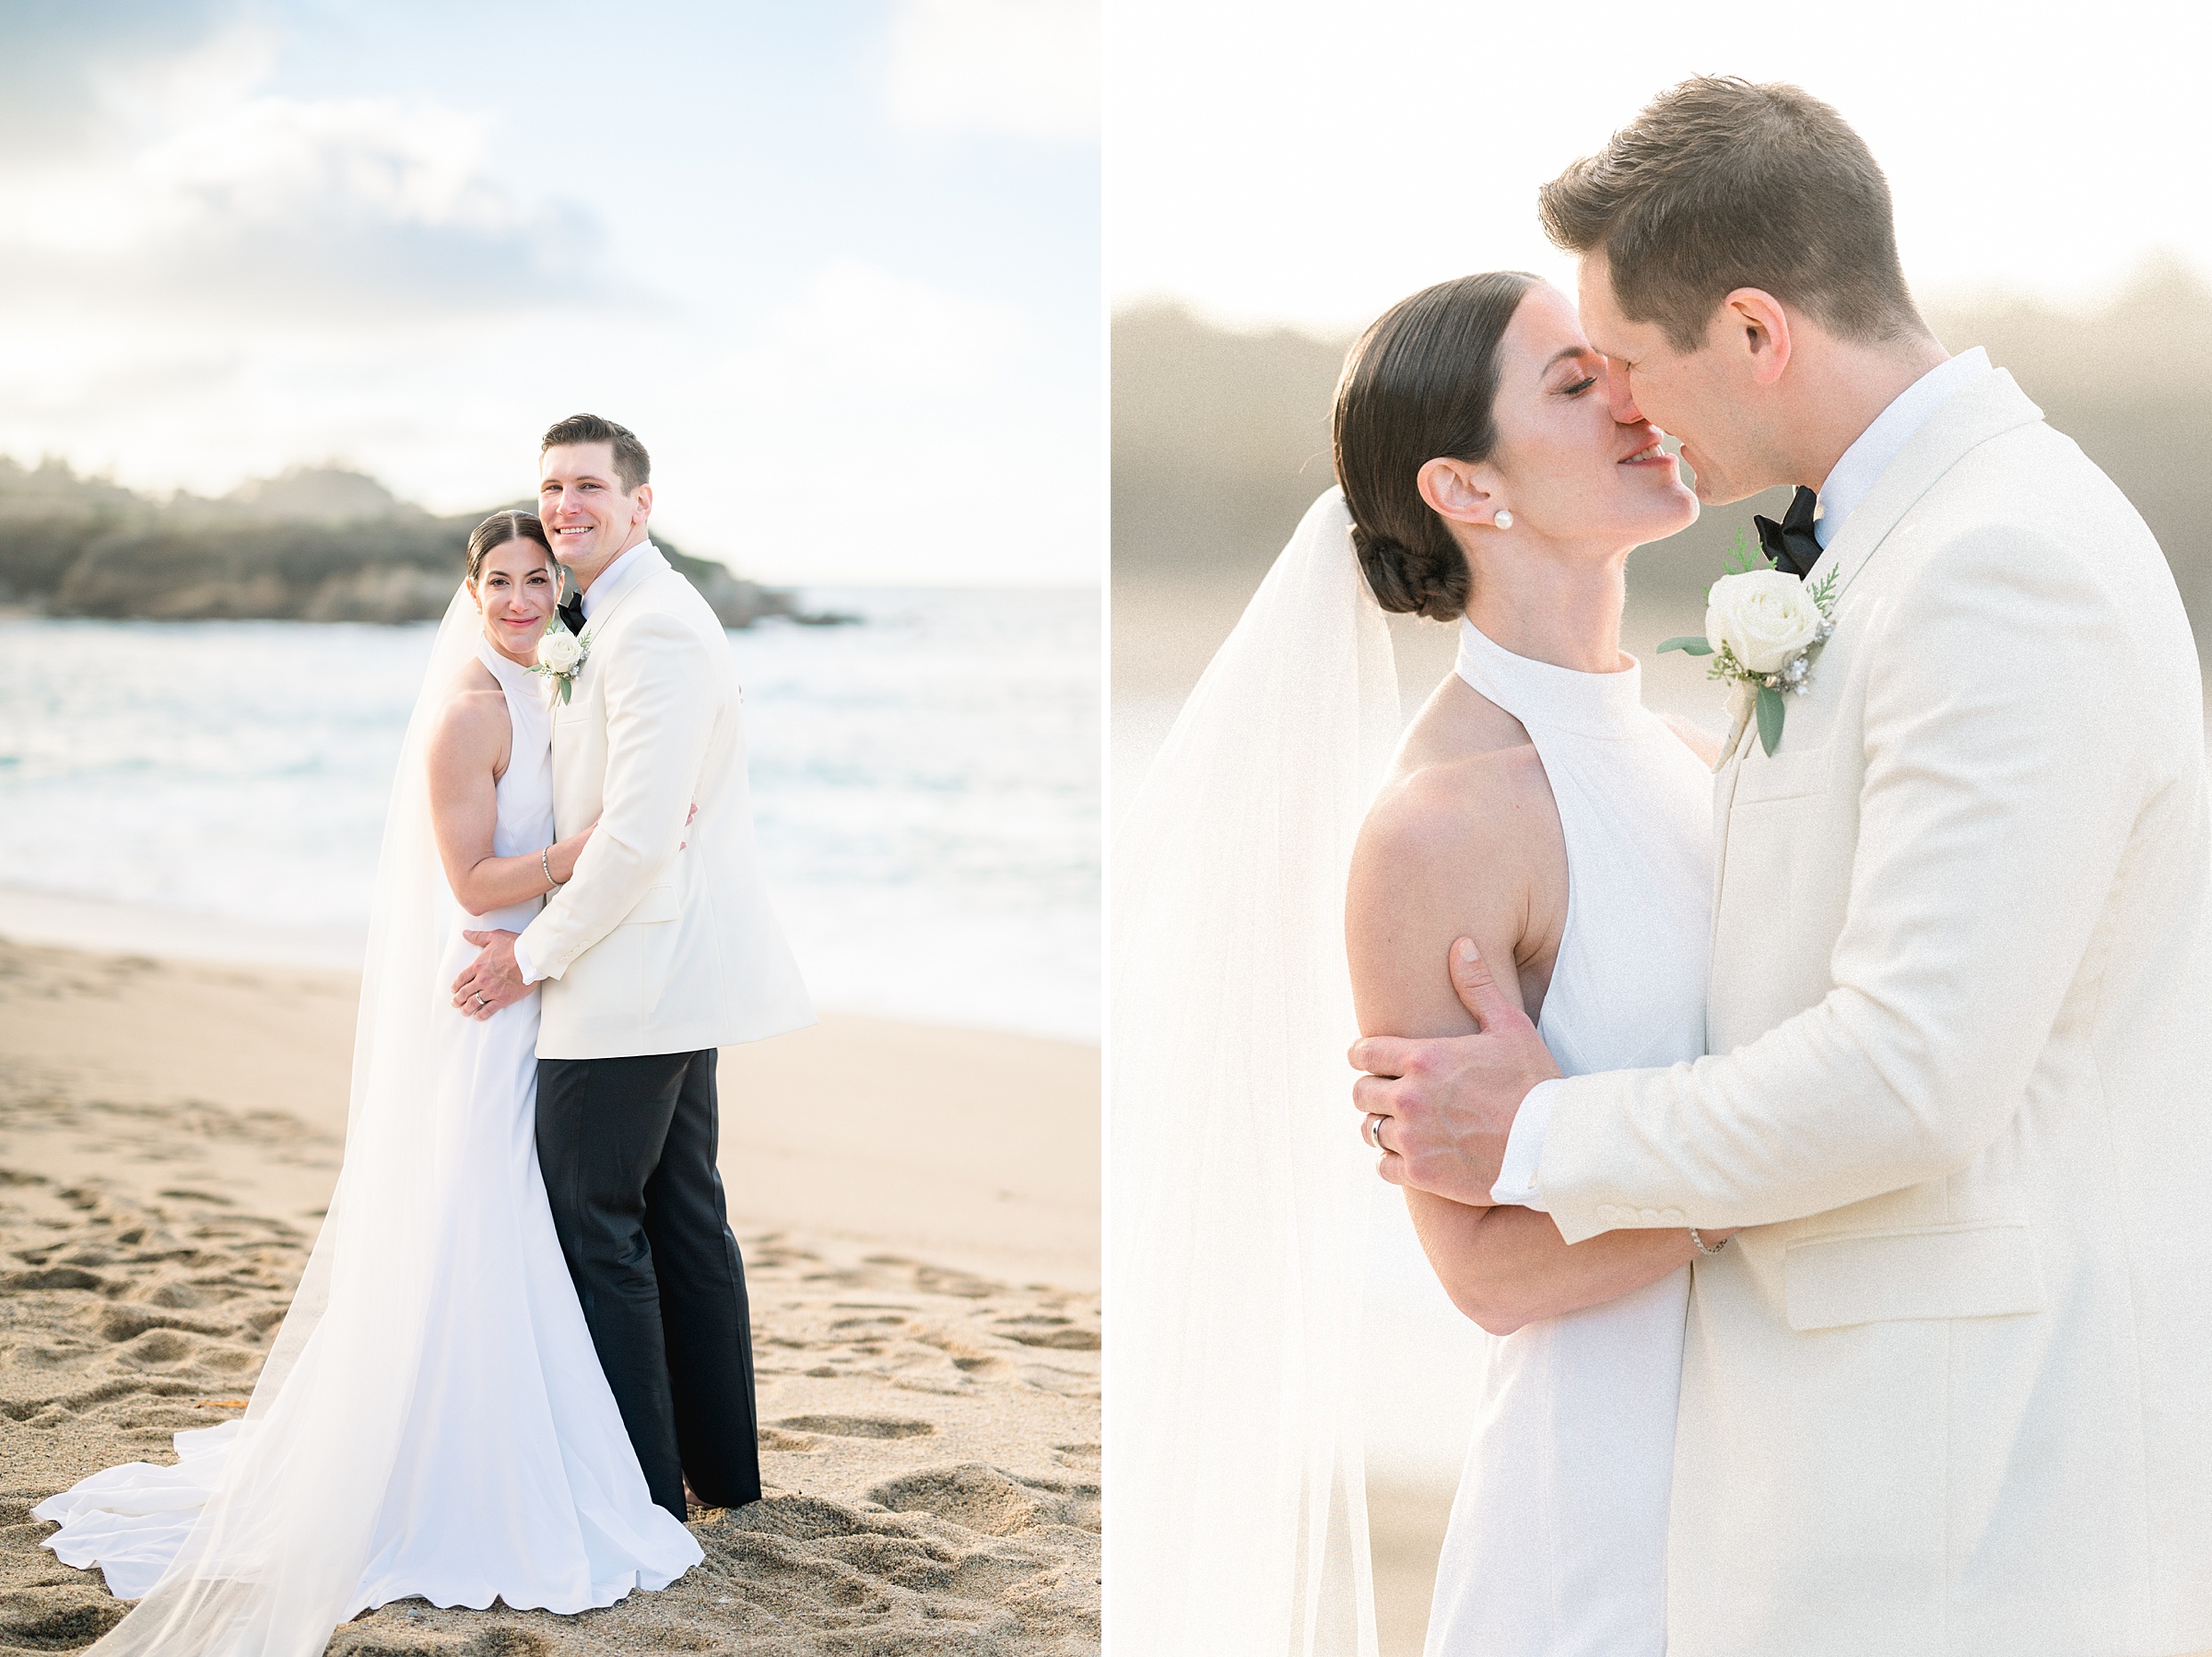 Black tie wedding at the beach in Carmel by the Sea | Carmel Fields Wedgewood wedding